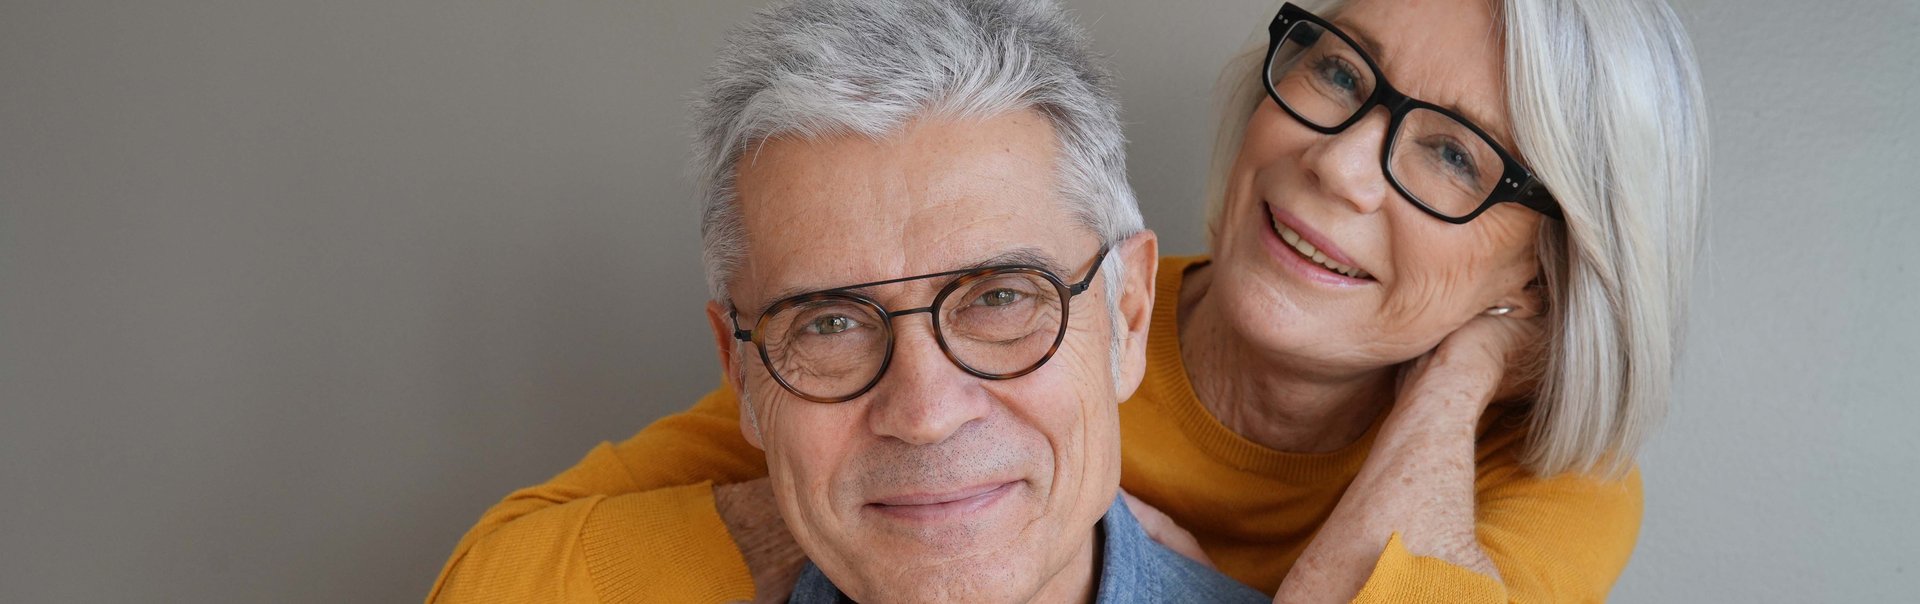 Ein älteres Paar lächelt freundlich in die Kamera.